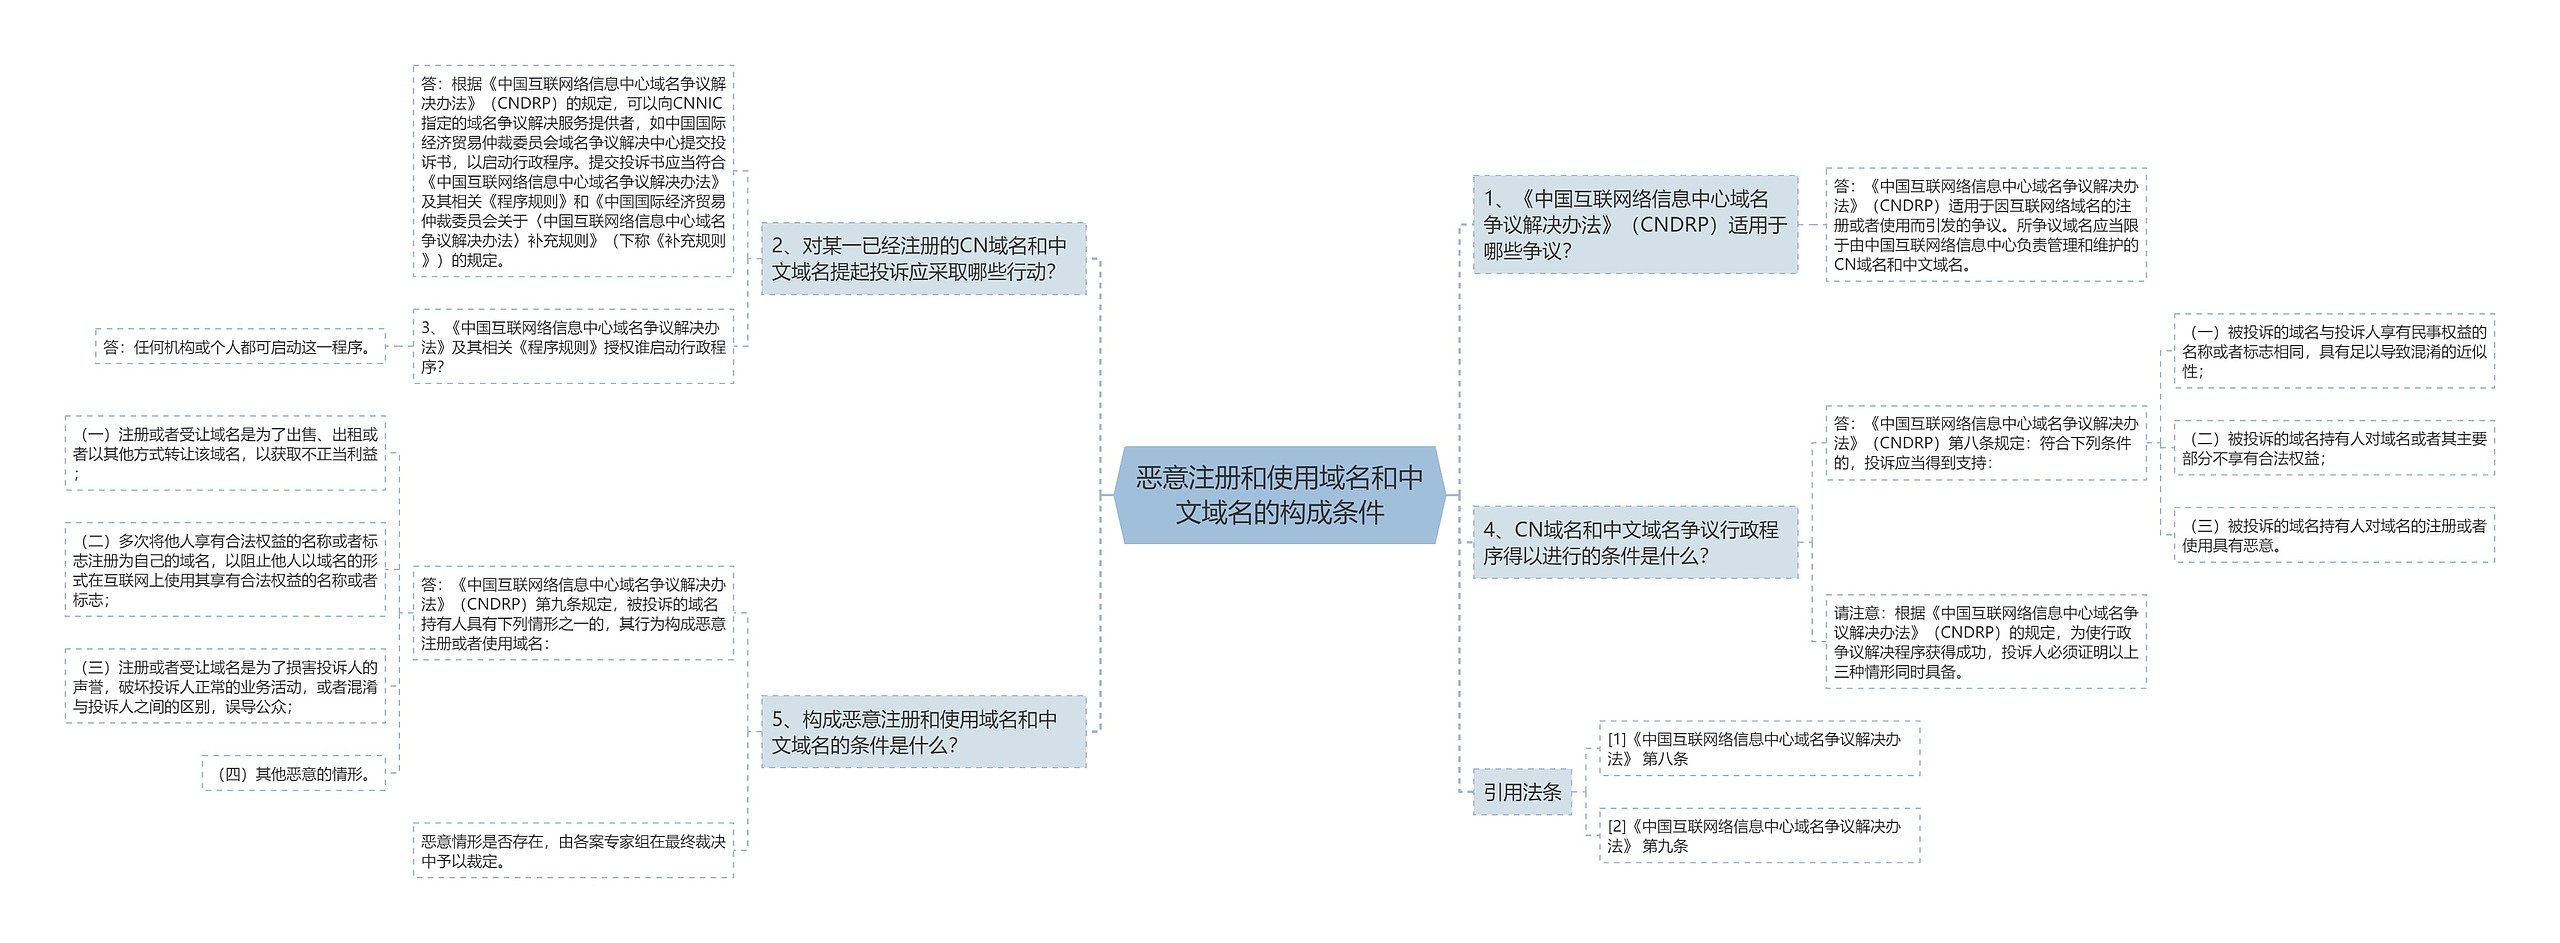 恶意注册和使用域名和中文域名的构成条件思维导图